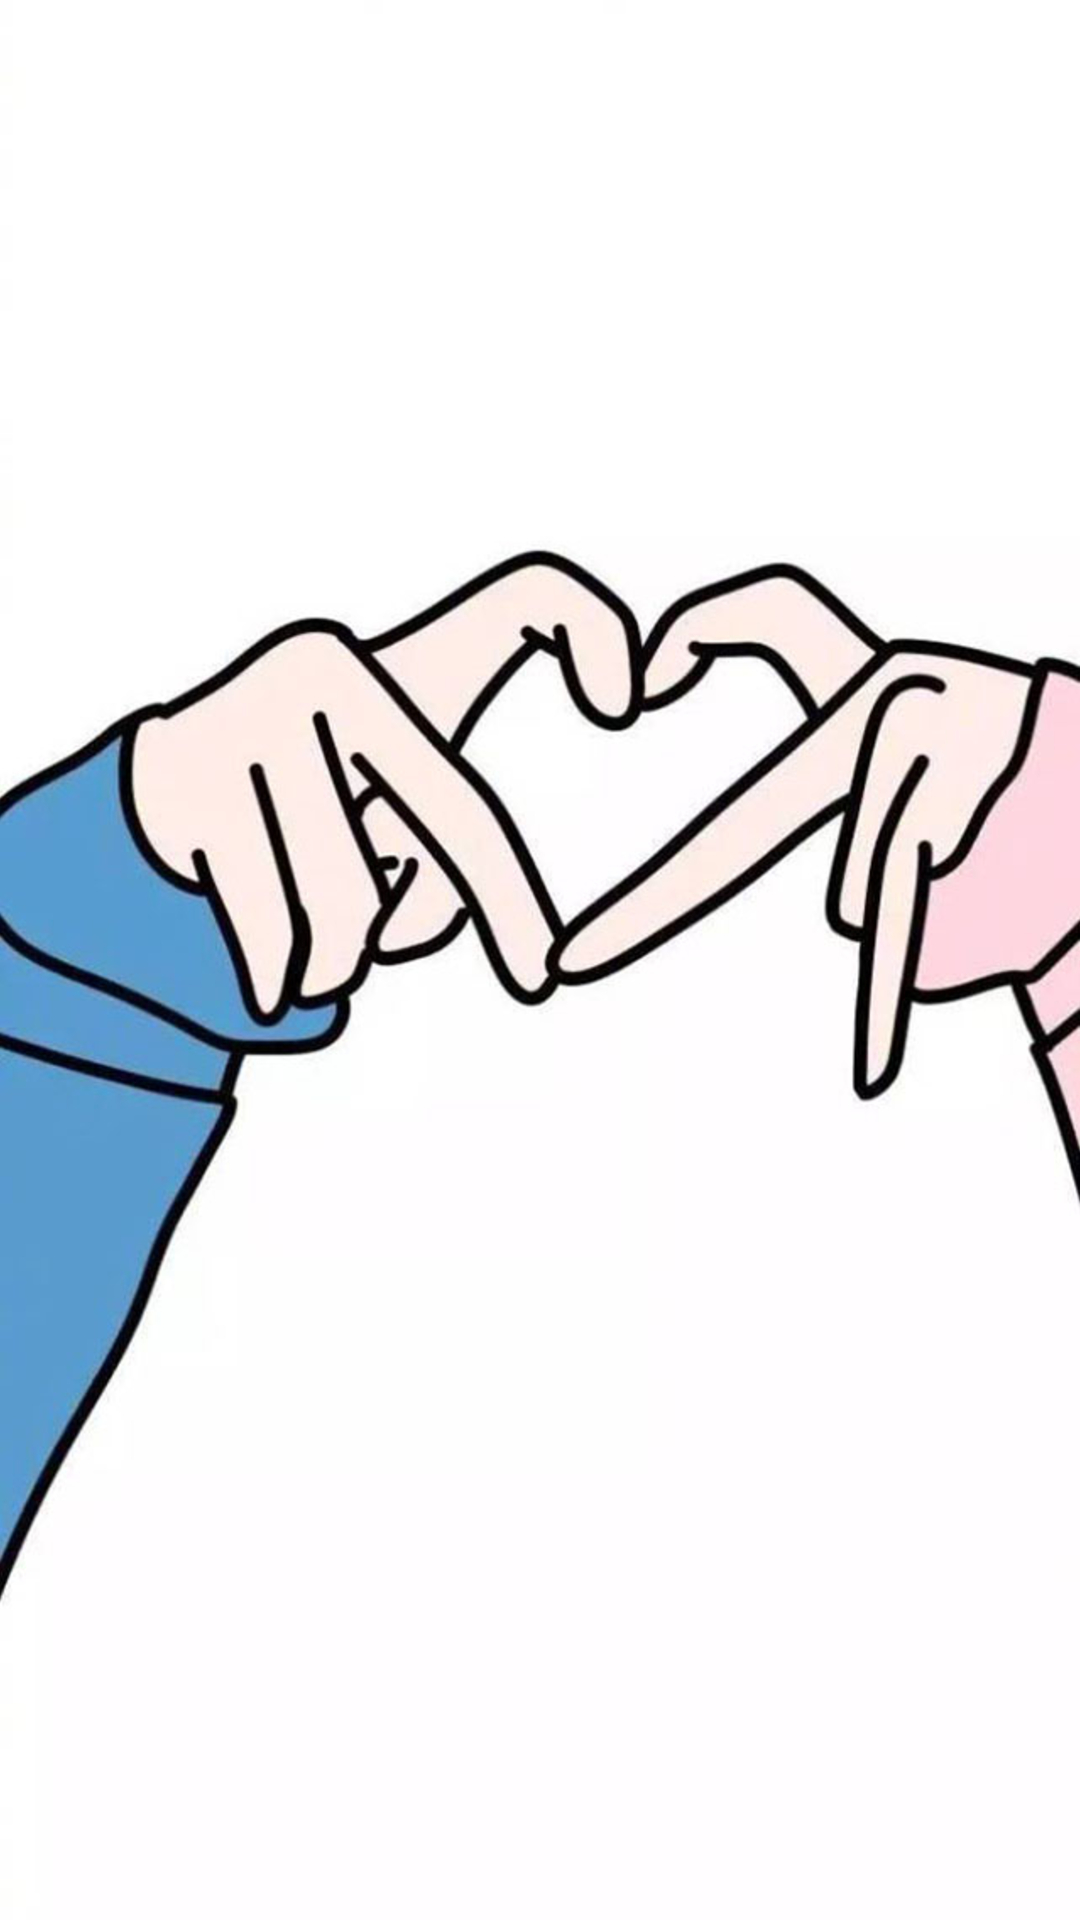 两只手组成的卡通爱心手机壁纸